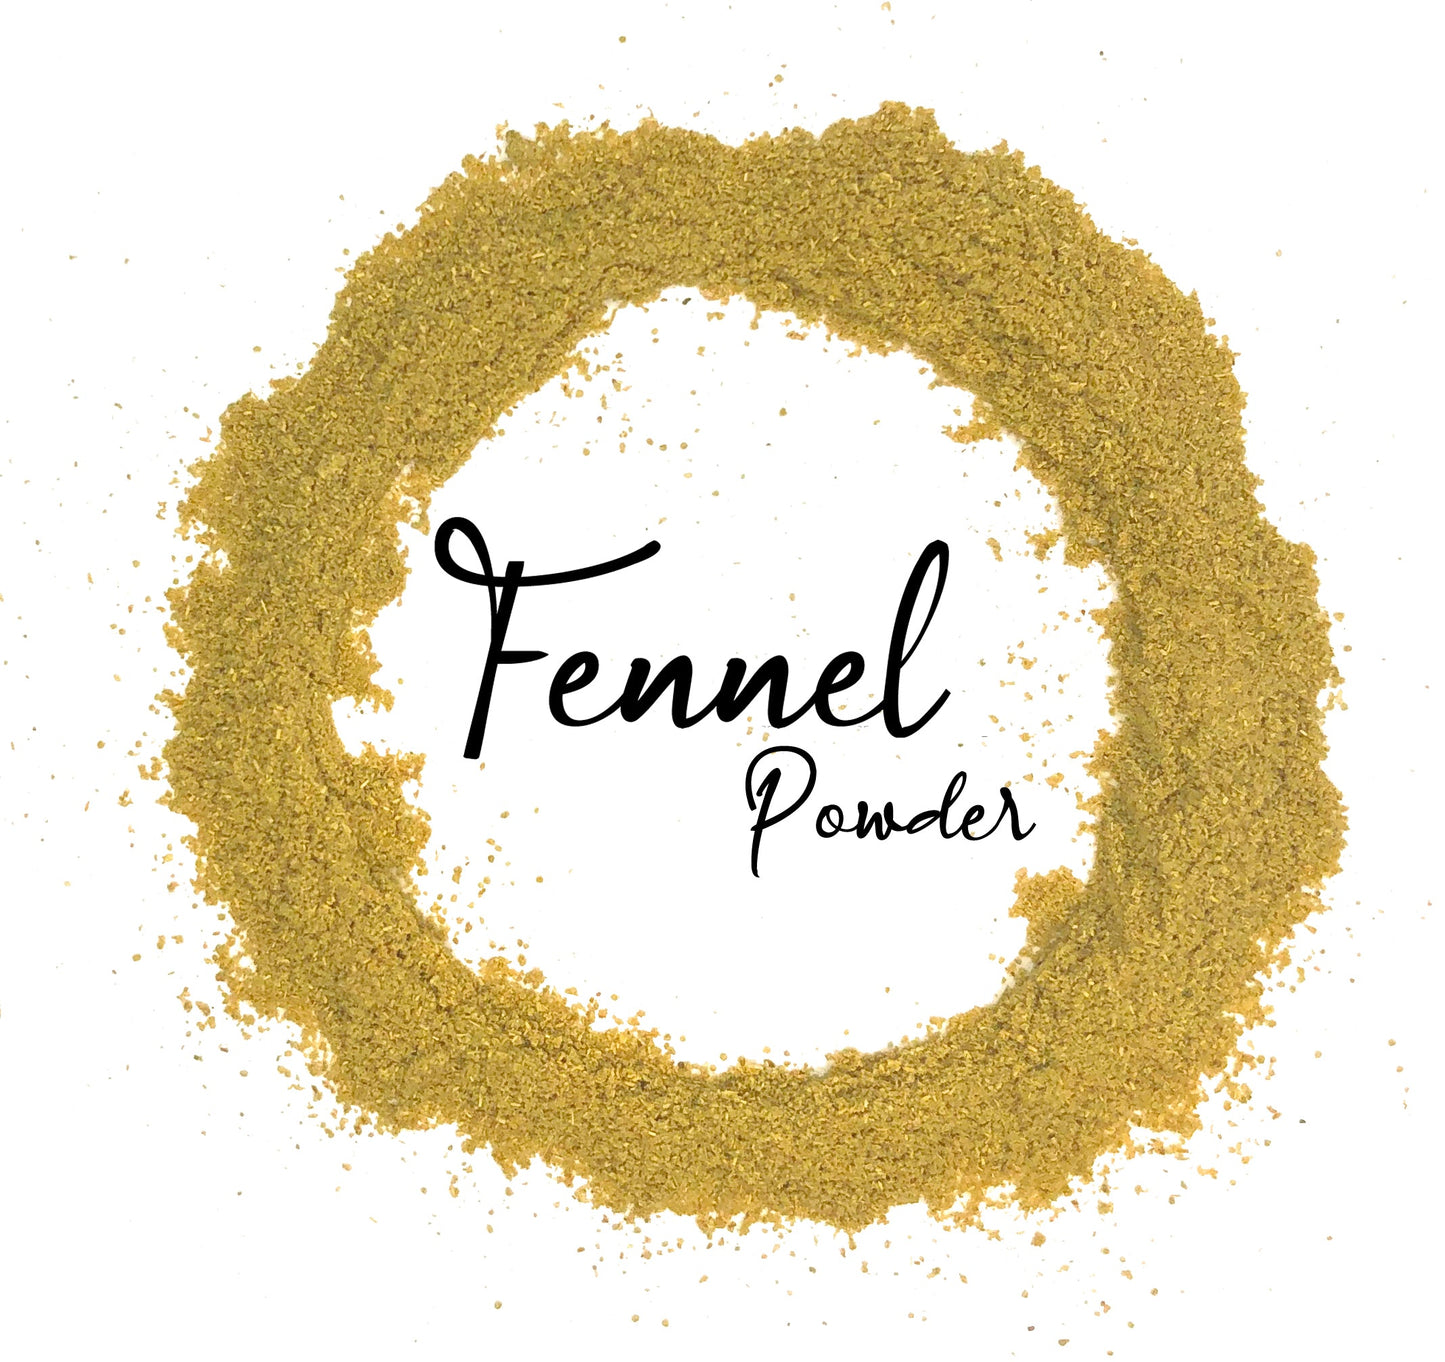 Wholesale Spices & Herbs - Fennel Seed Powder, Organic 3.0oz(87.3g) Jar